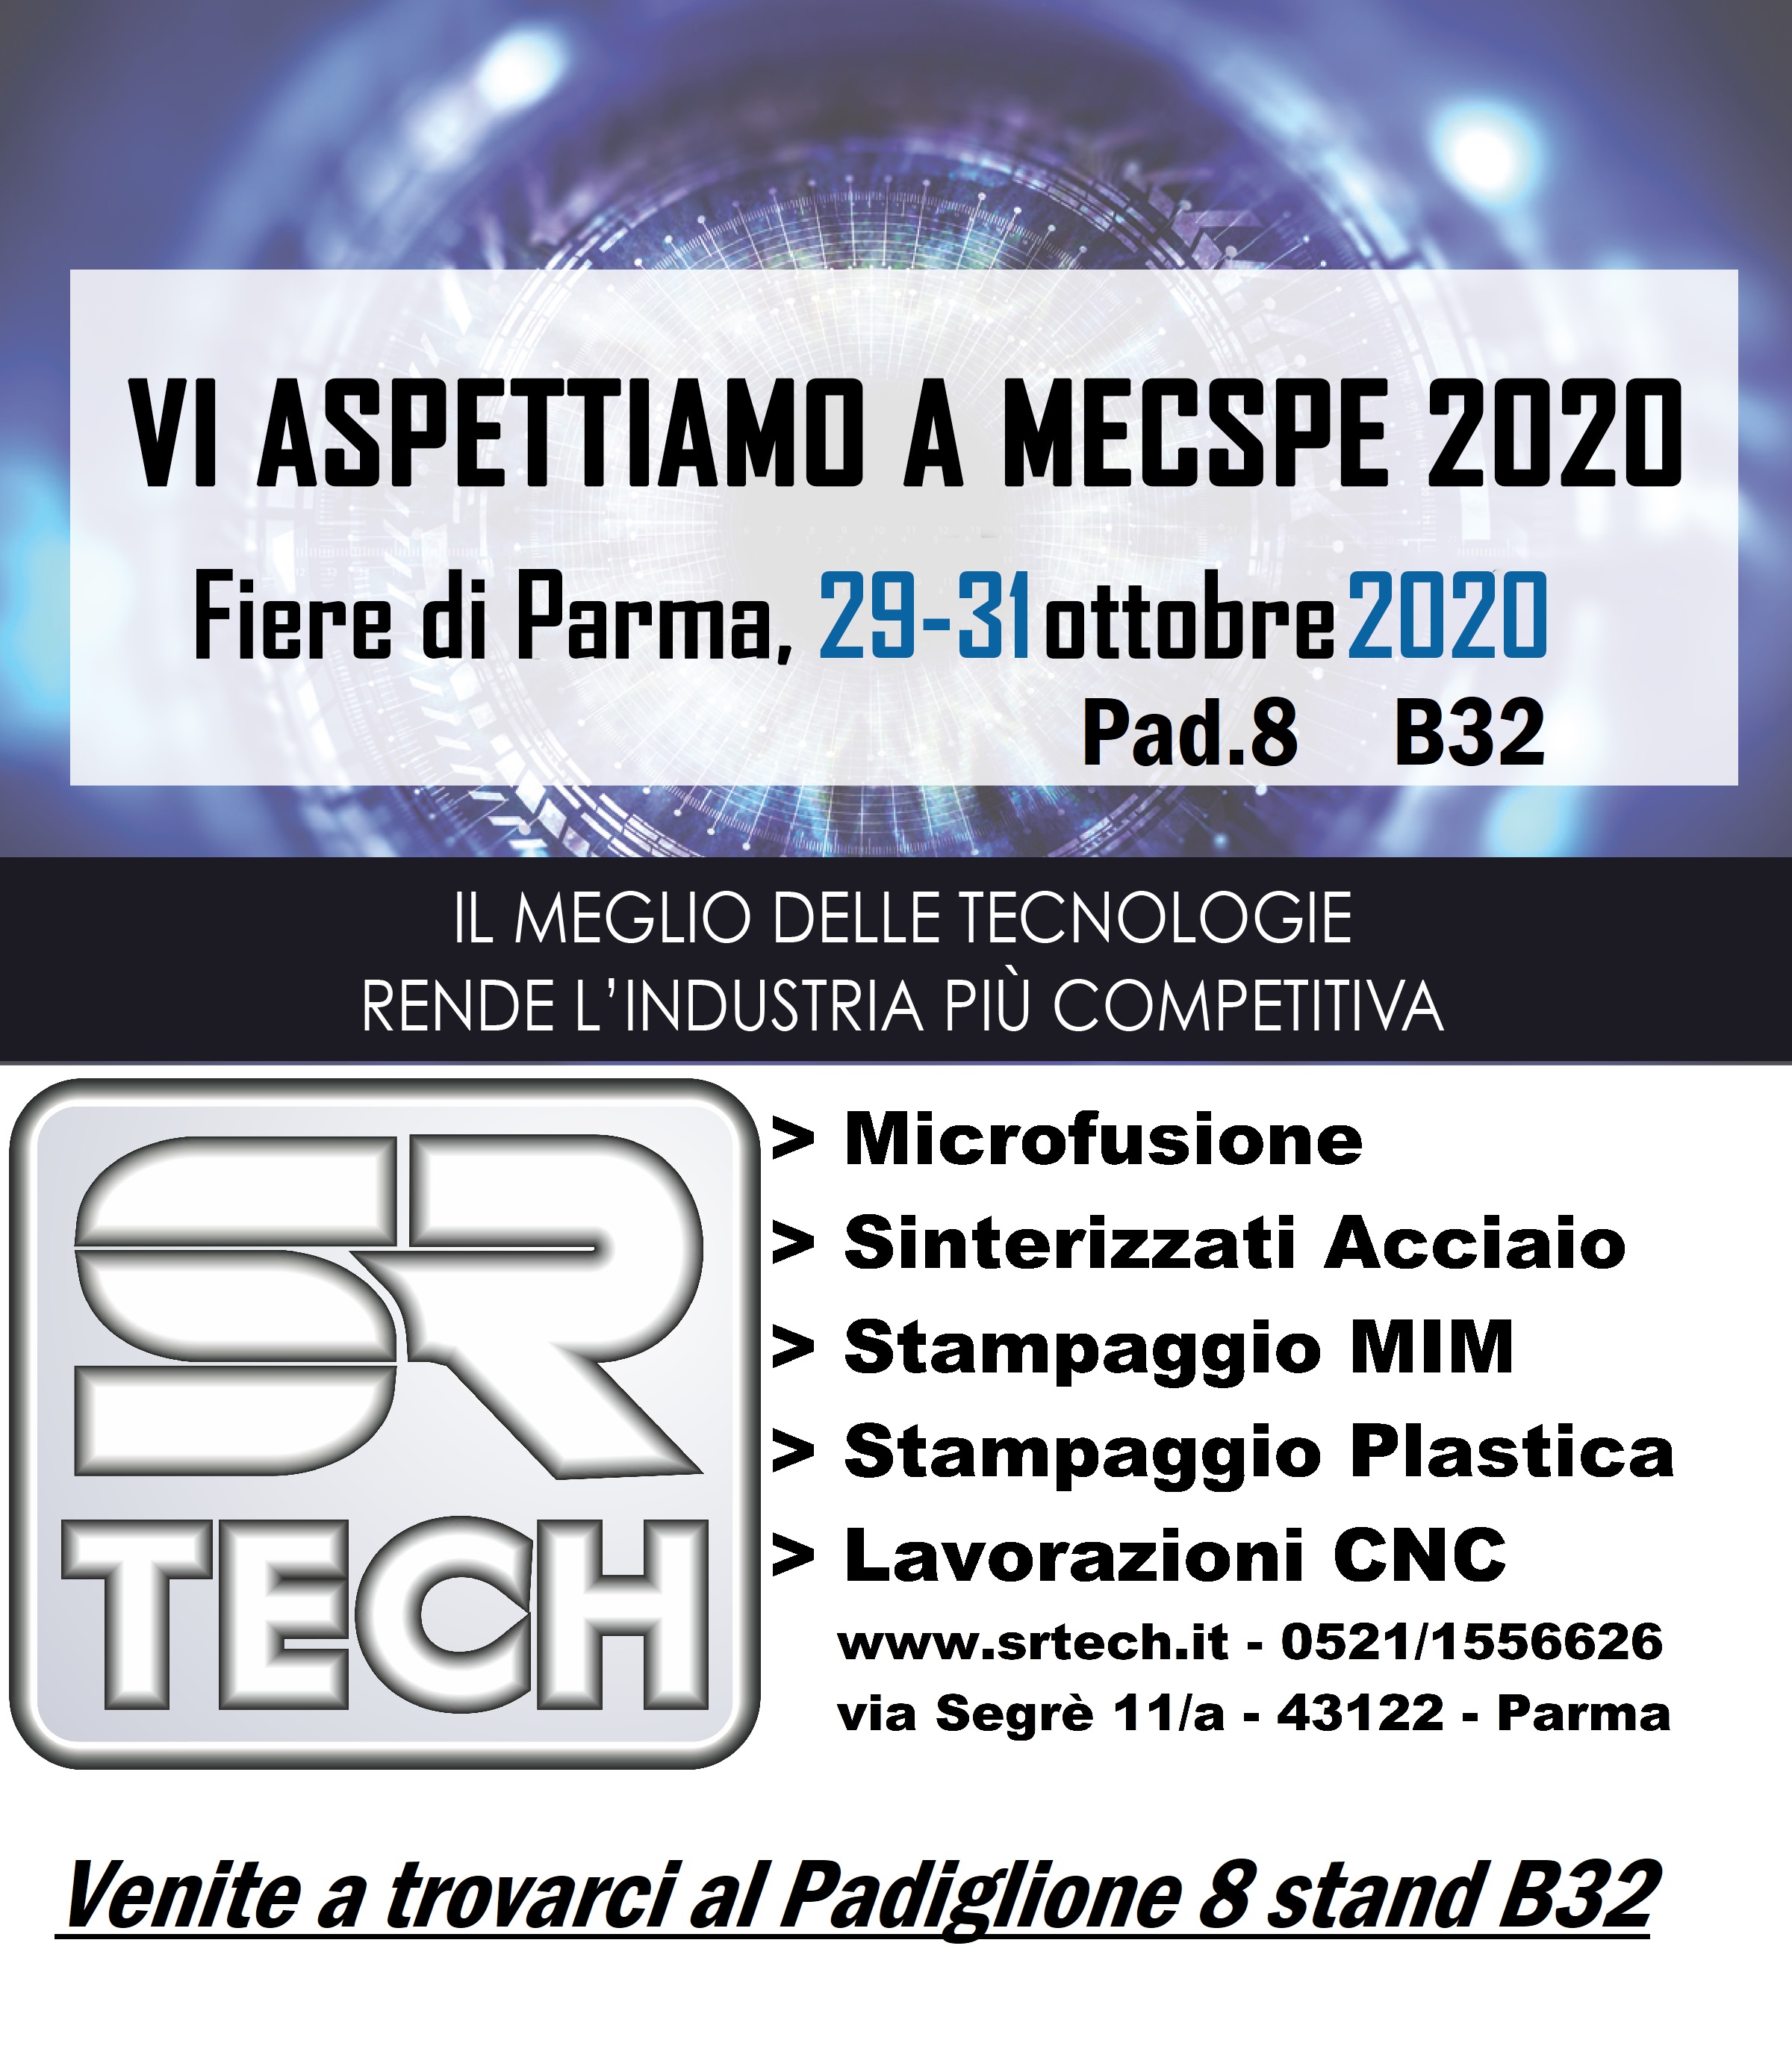 MECSPE 2020 - Biglietto e Parcheggio Gratuito